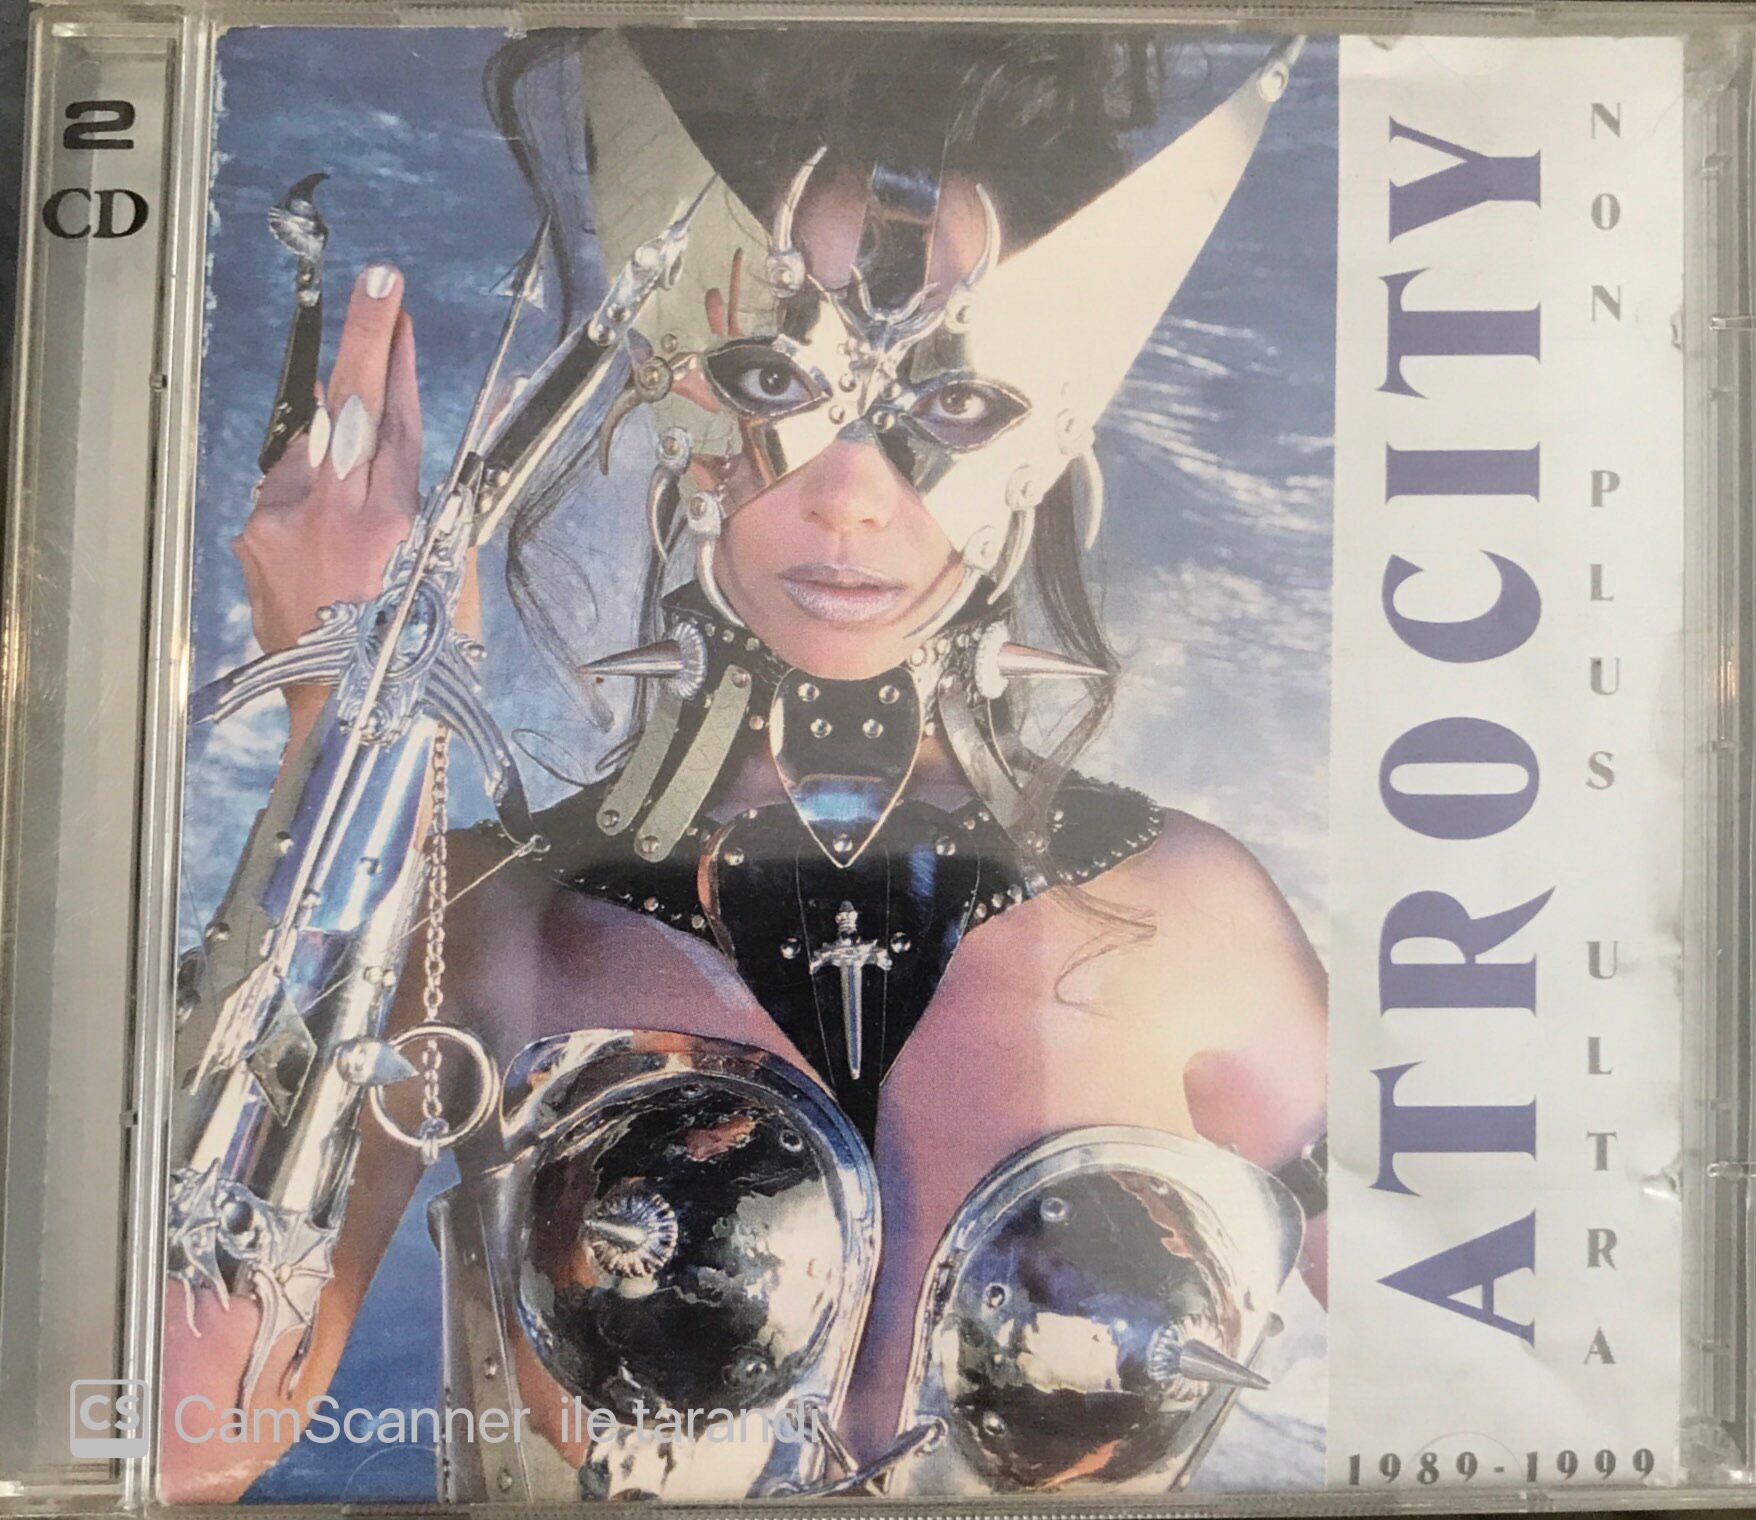 Atrocity - Non Plus Ultra CD